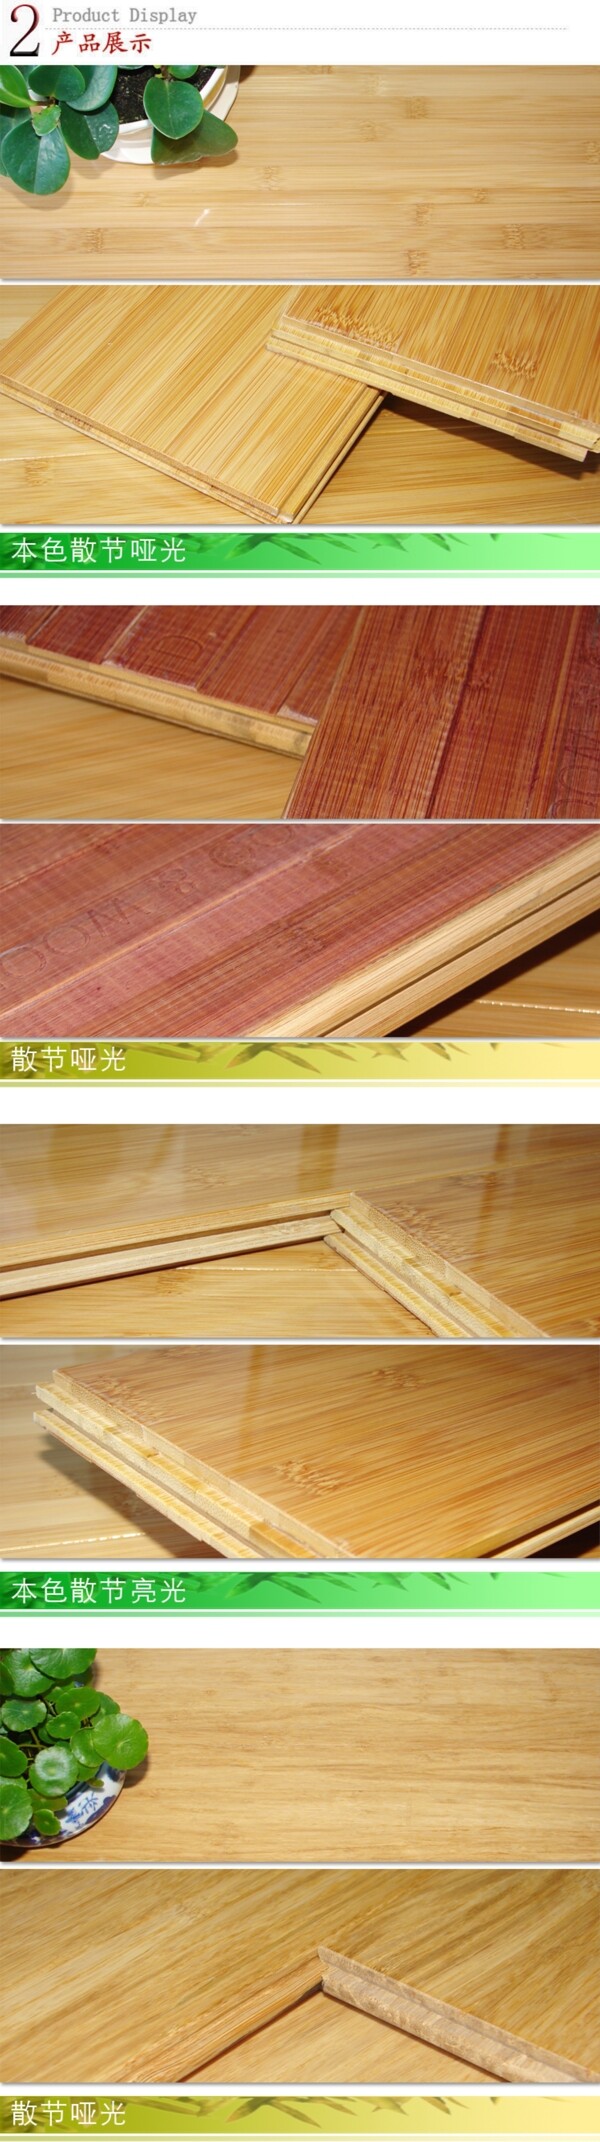 竹地板产品展示图片